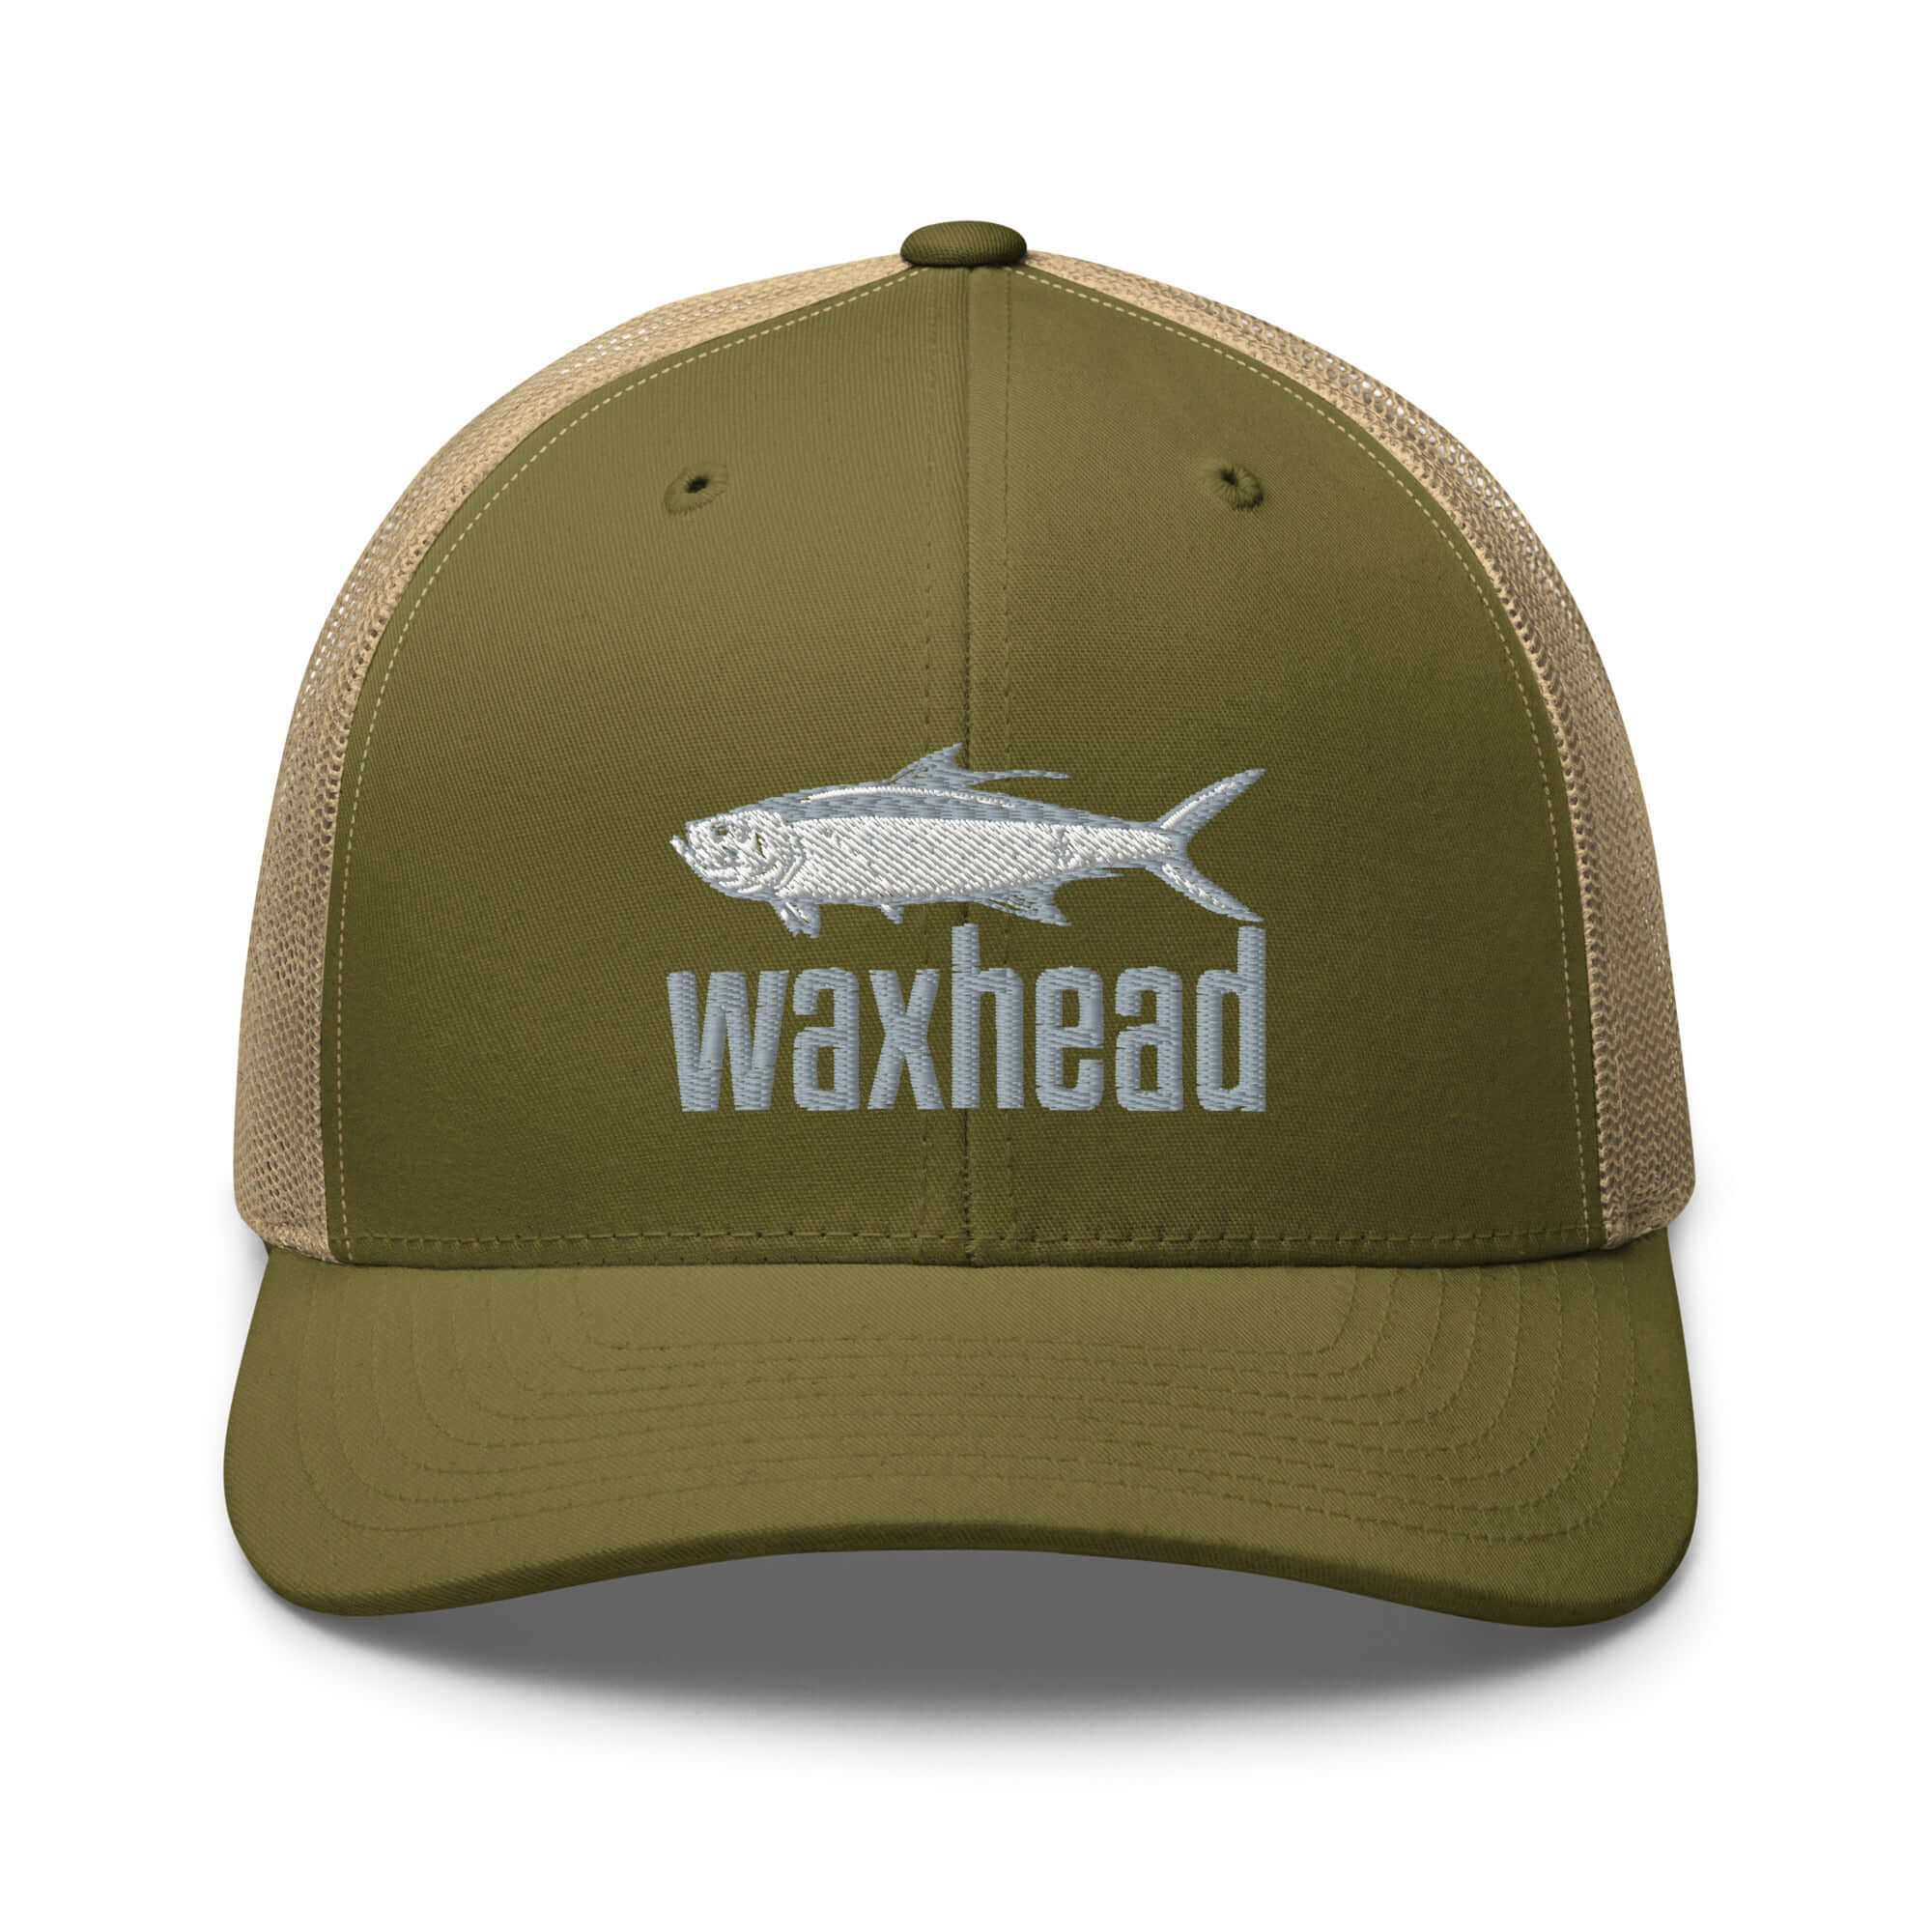 Tarpon Fishing Hat for Men and Women | Tarpon Hat Green